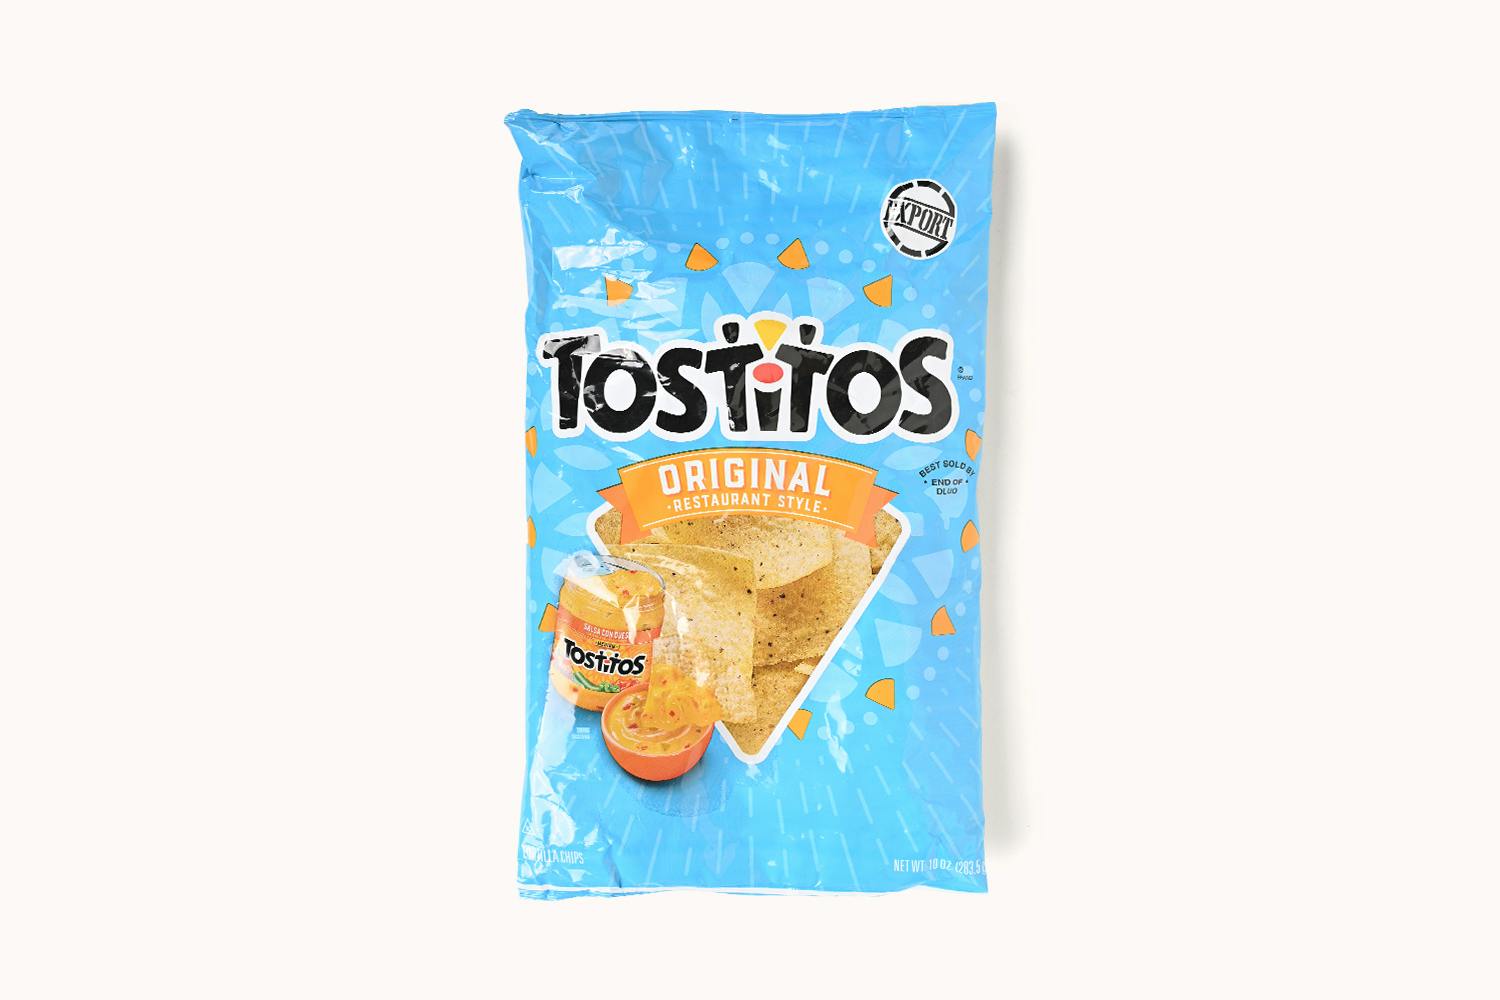 Tostitos Original Restaurant Style Tortilla Chips